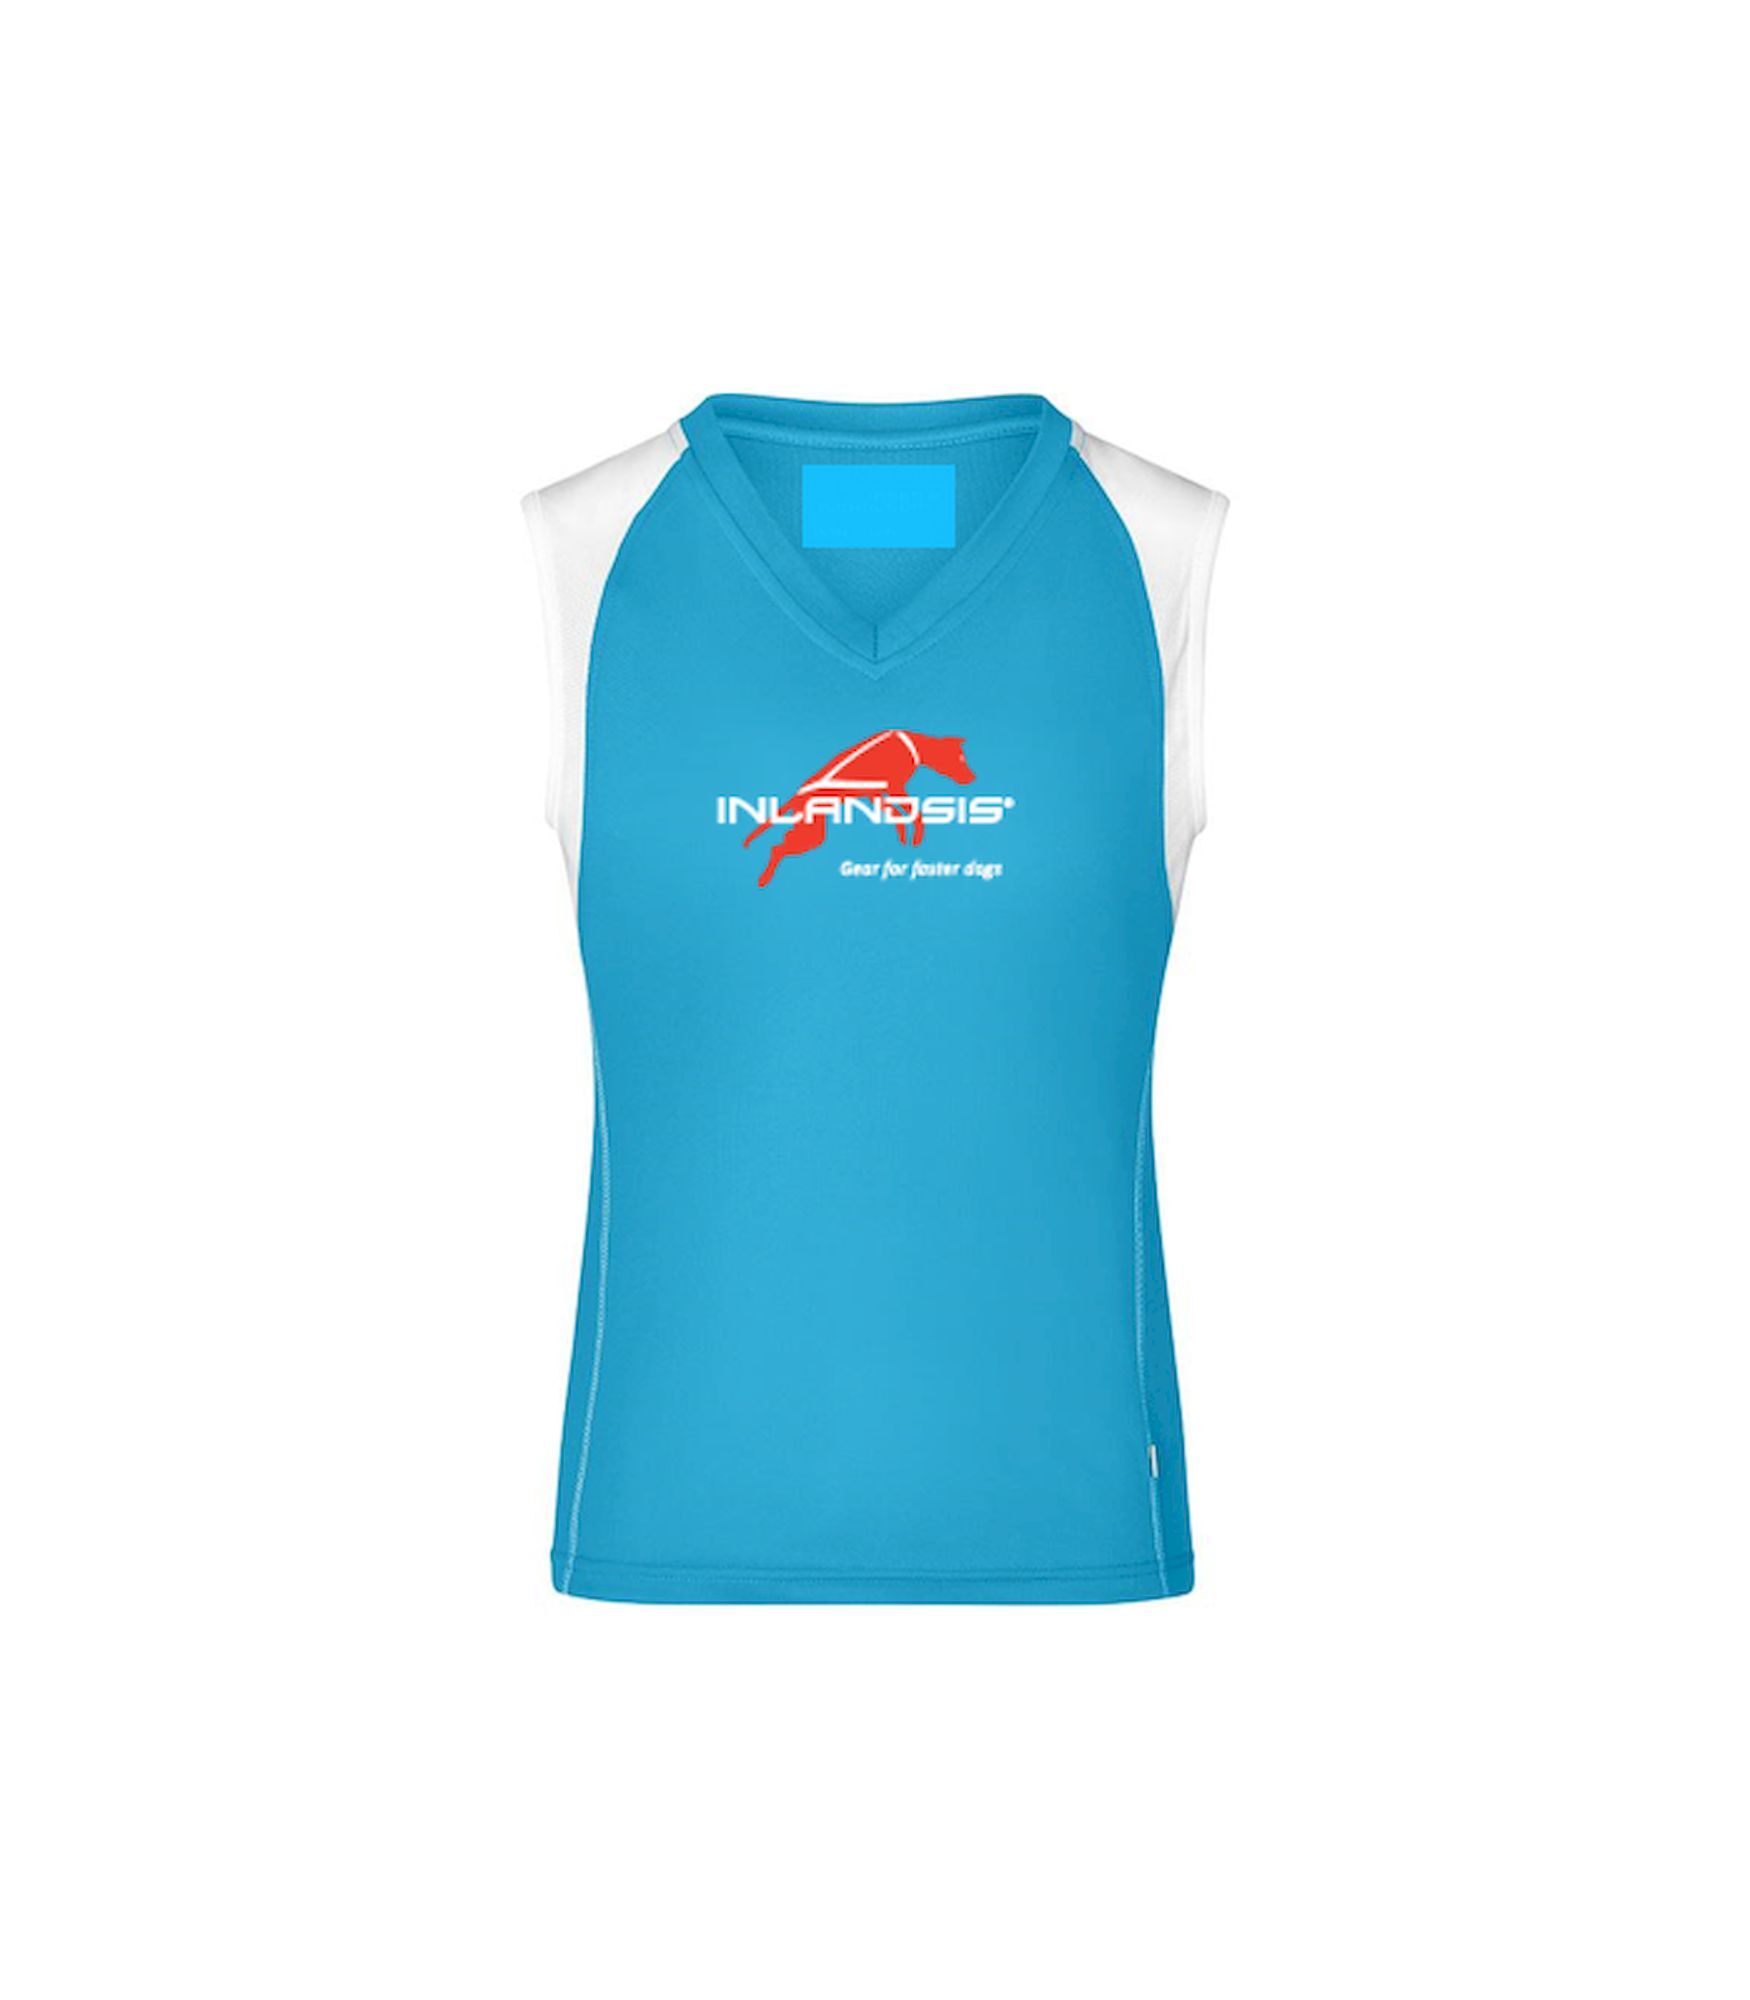 Inlandsis Débardeur Running Team - Camiseta sin mangas - Mujer | Hardloop